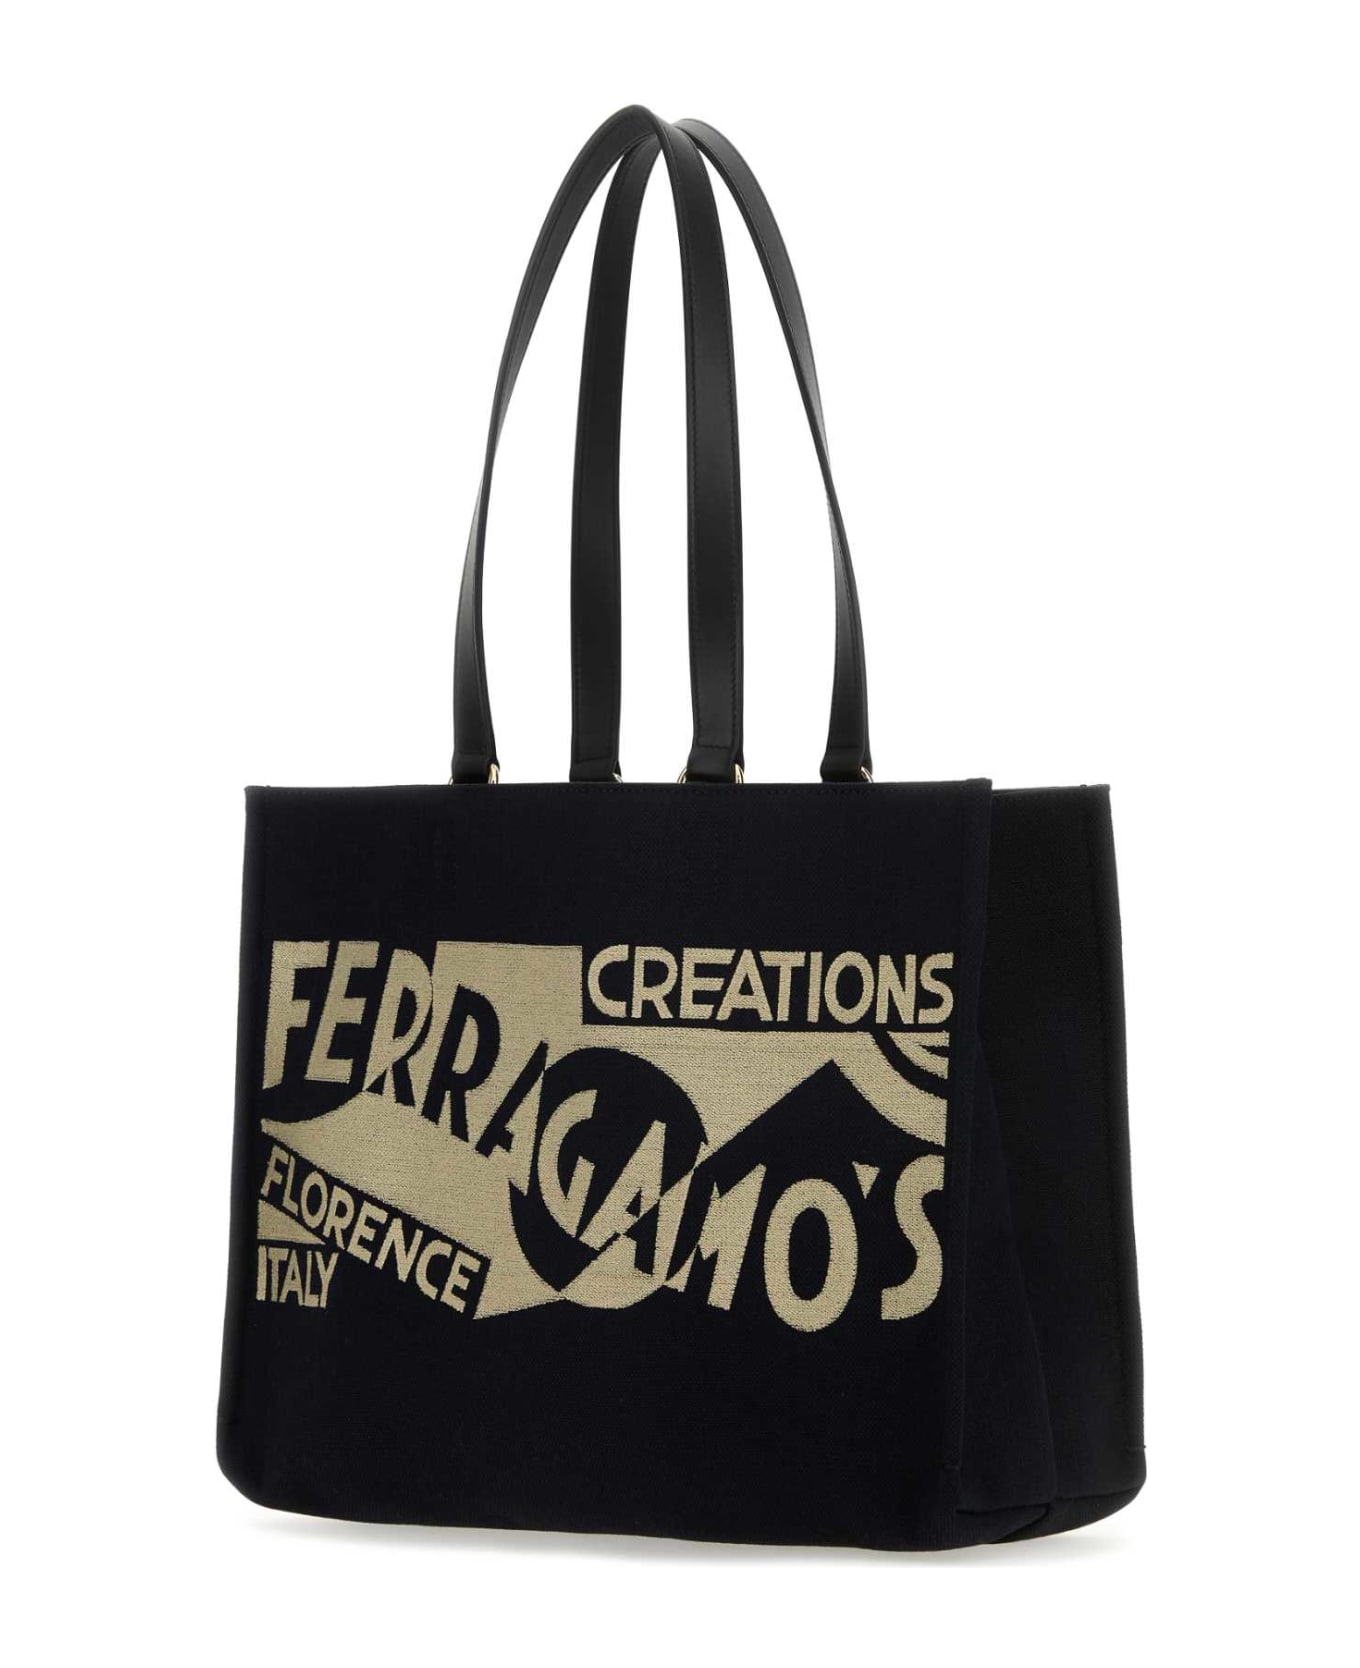 Ferragamo Black Canvas Shopping Bag - NERONERONERO